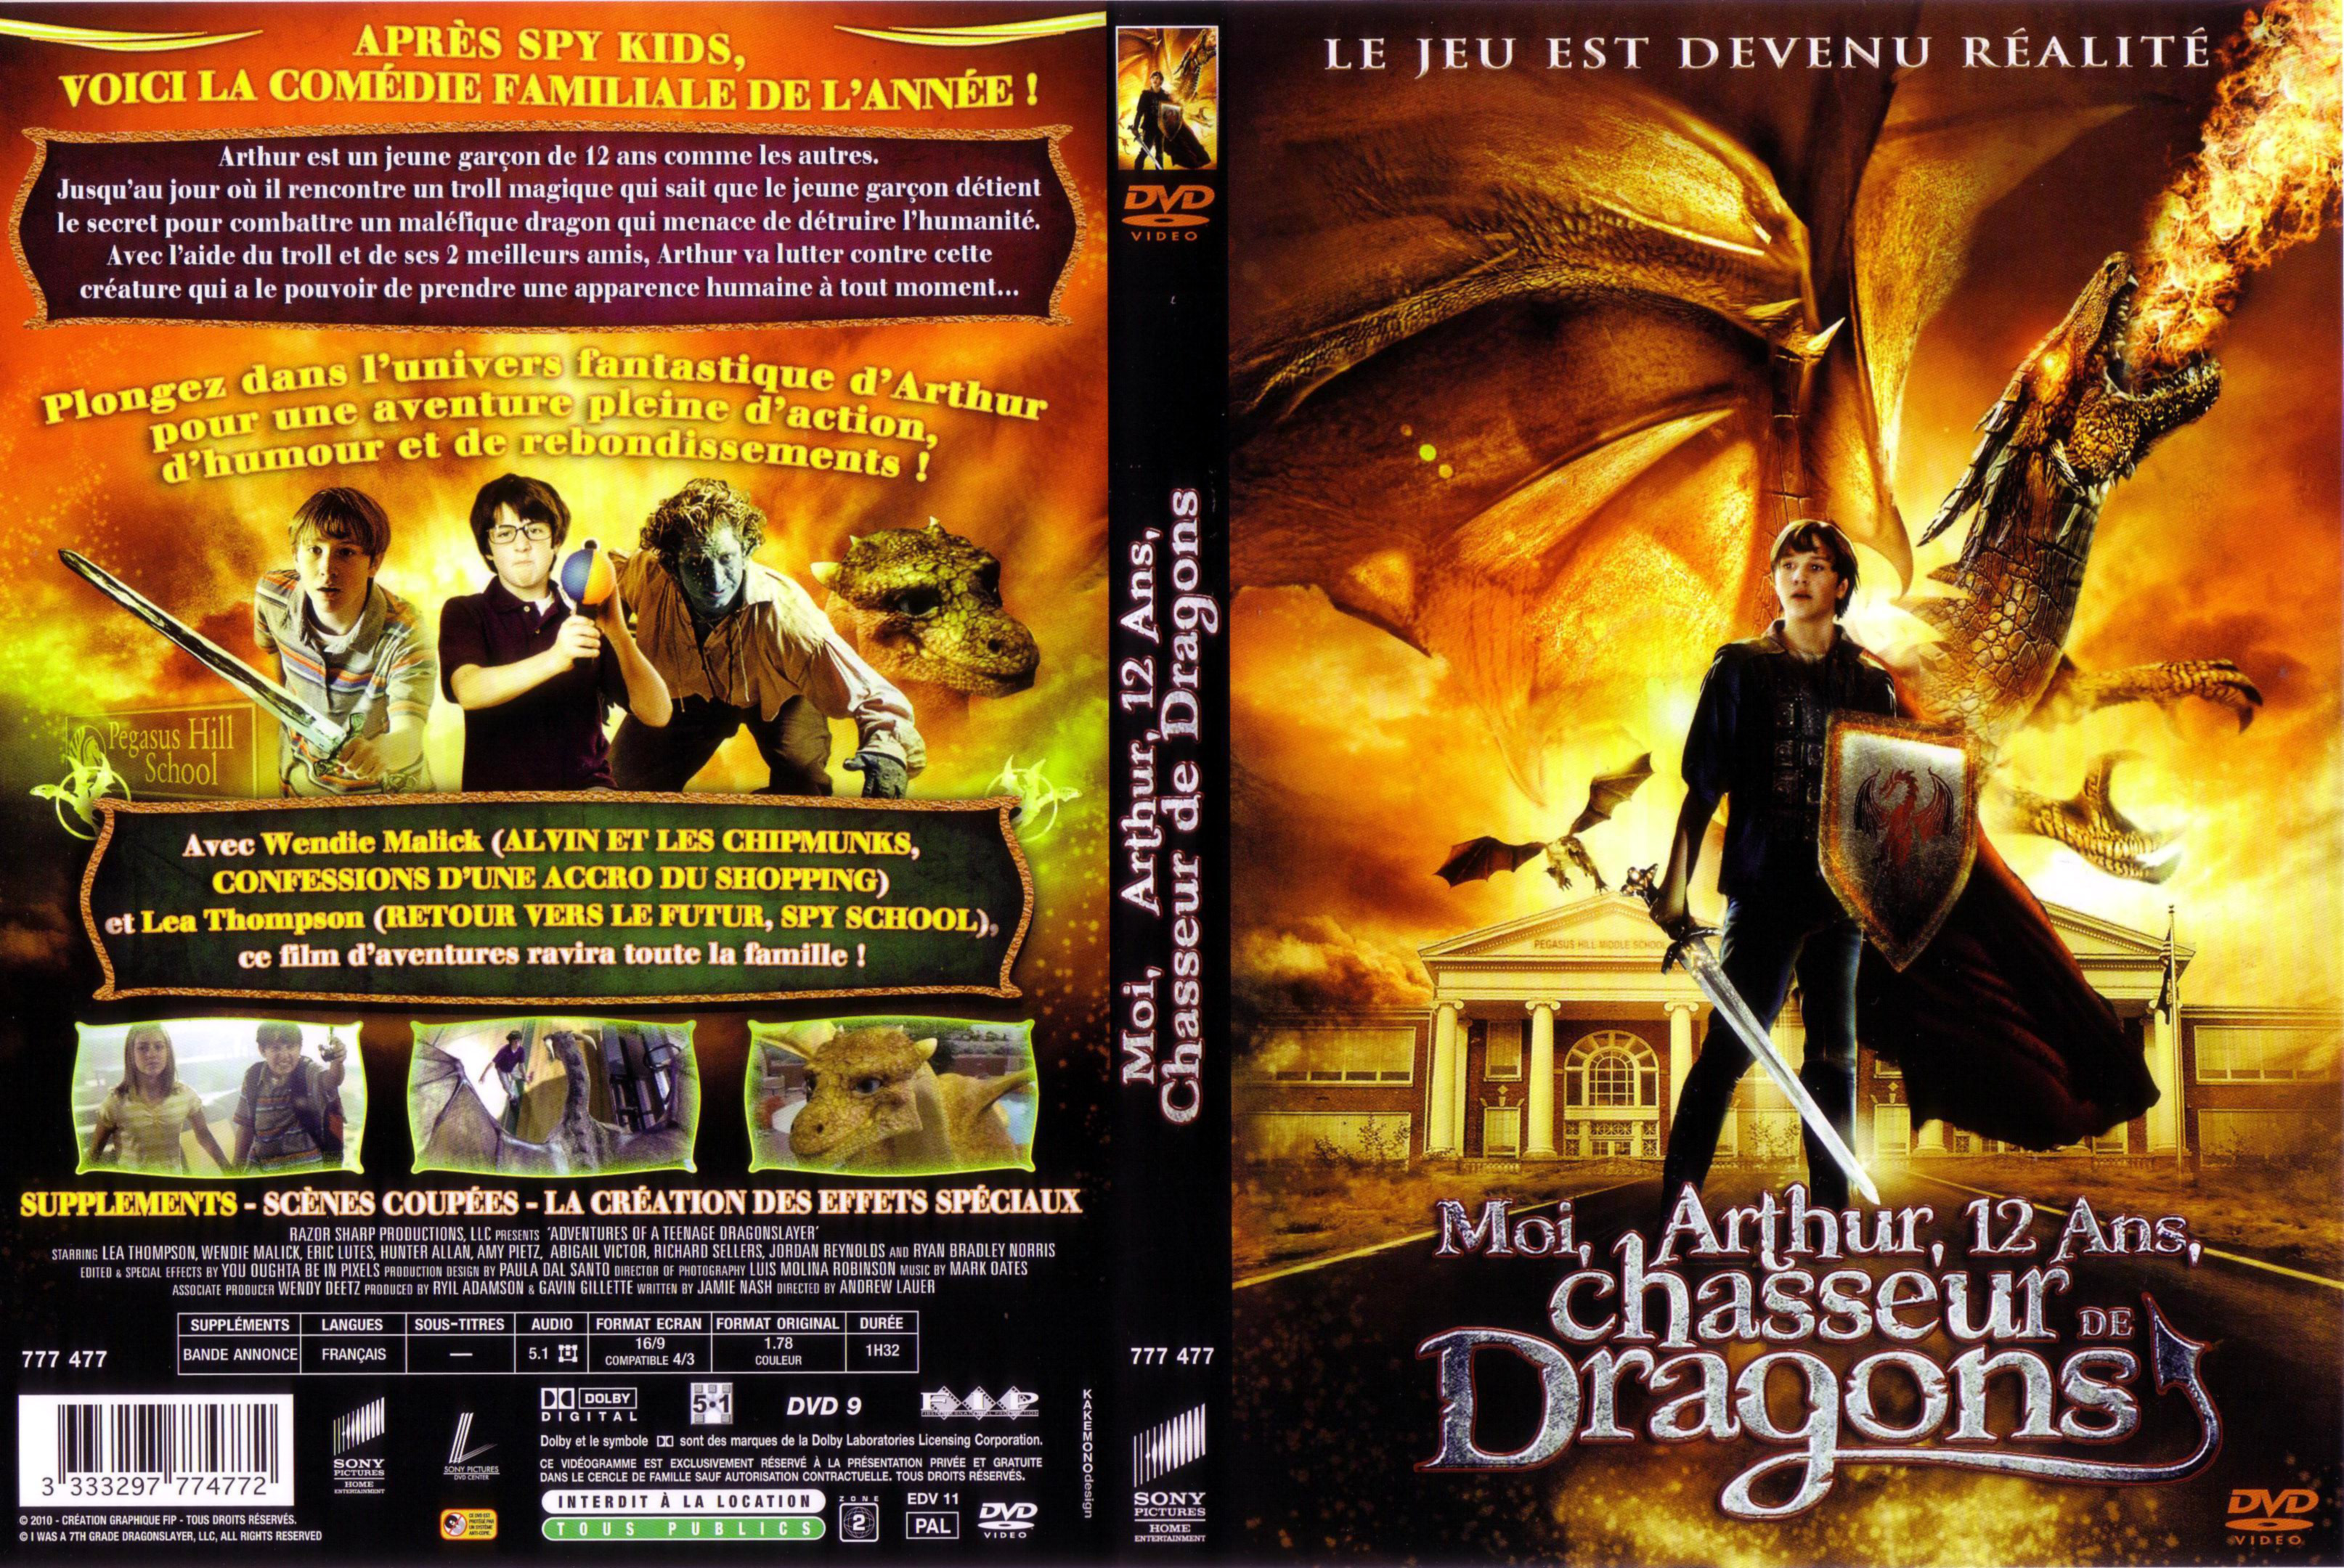 Jaquette DVD Moi Arthur 12 ans chasseur de dragons